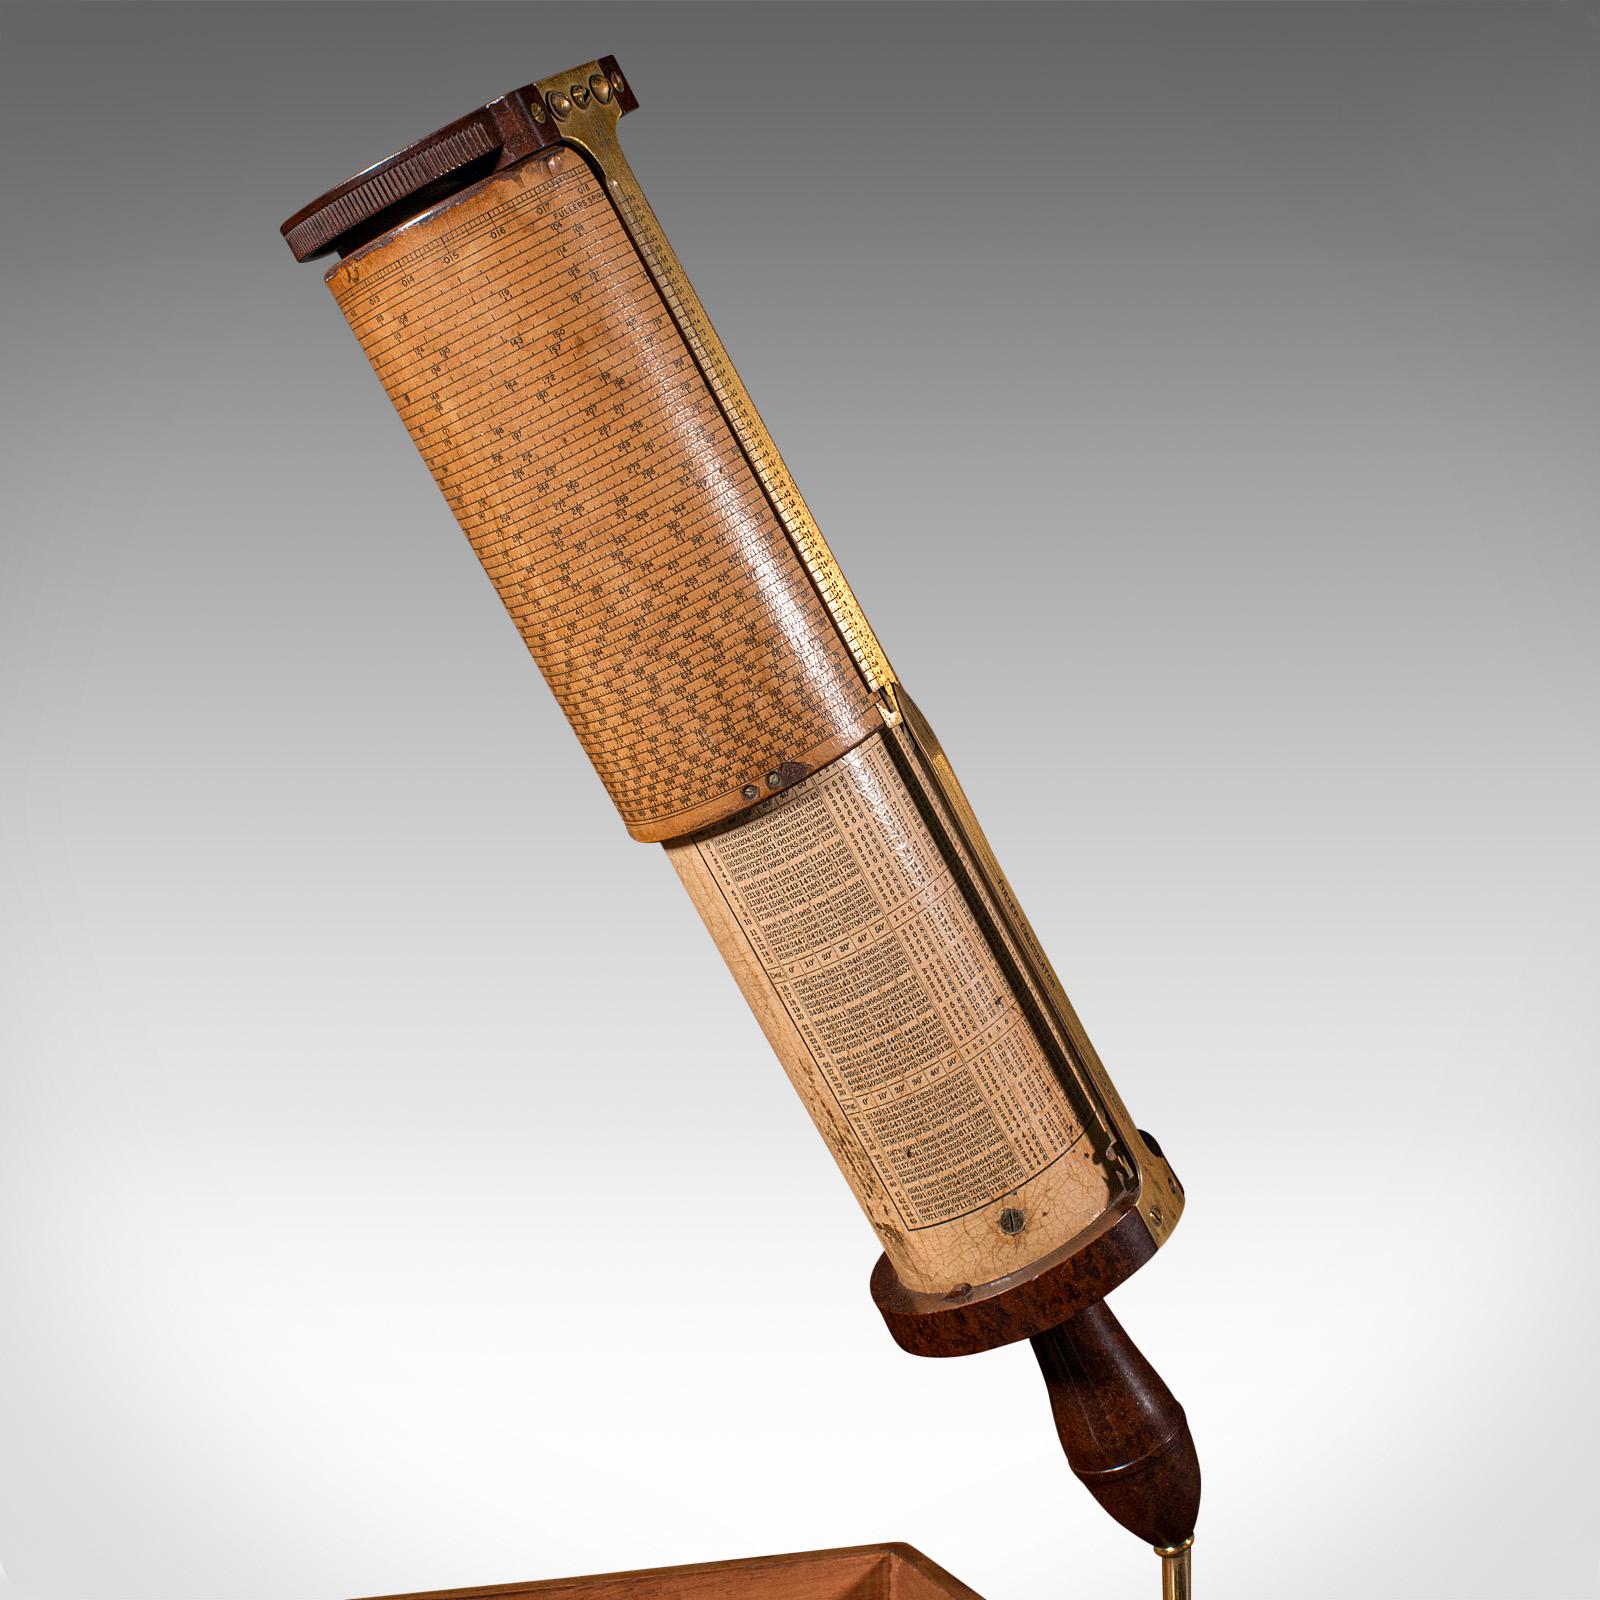 Dies ist ein Vintage Fuller's Calculator. Ein englisches wissenschaftliches Instrument mit Bakelit- und Walnussgehäuse von Stanley of London aus der Mitte des 20. Jahrhunderts, um 1950.

Hochwertiges mathematisches Instrument von größtem